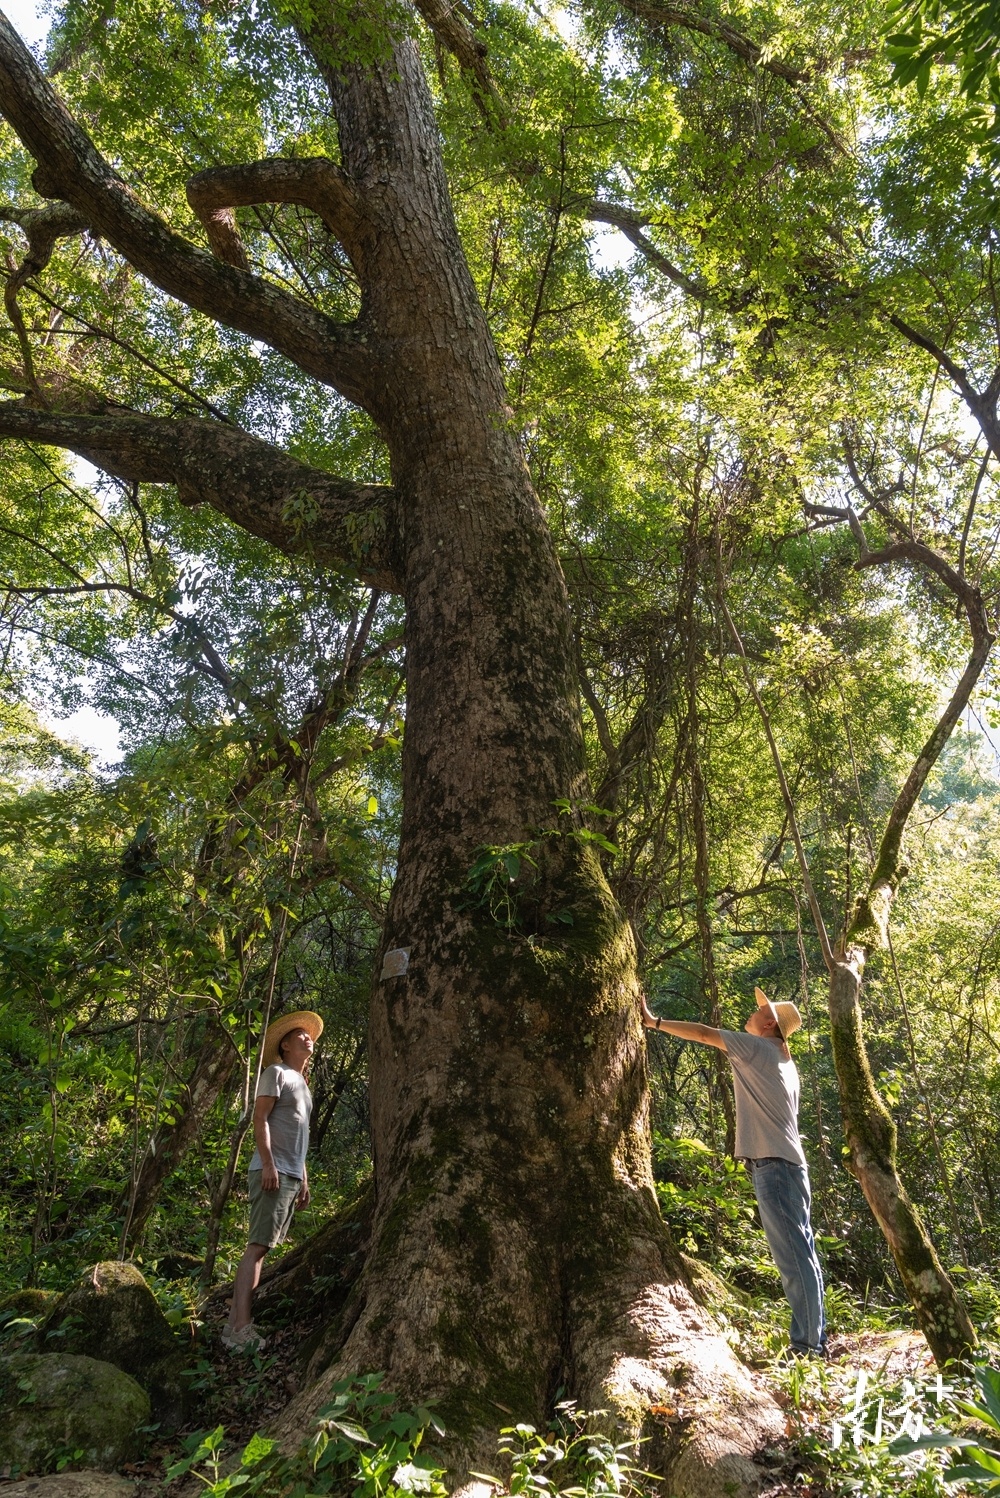 秤架古树群拥有300年以上的檵木284棵。